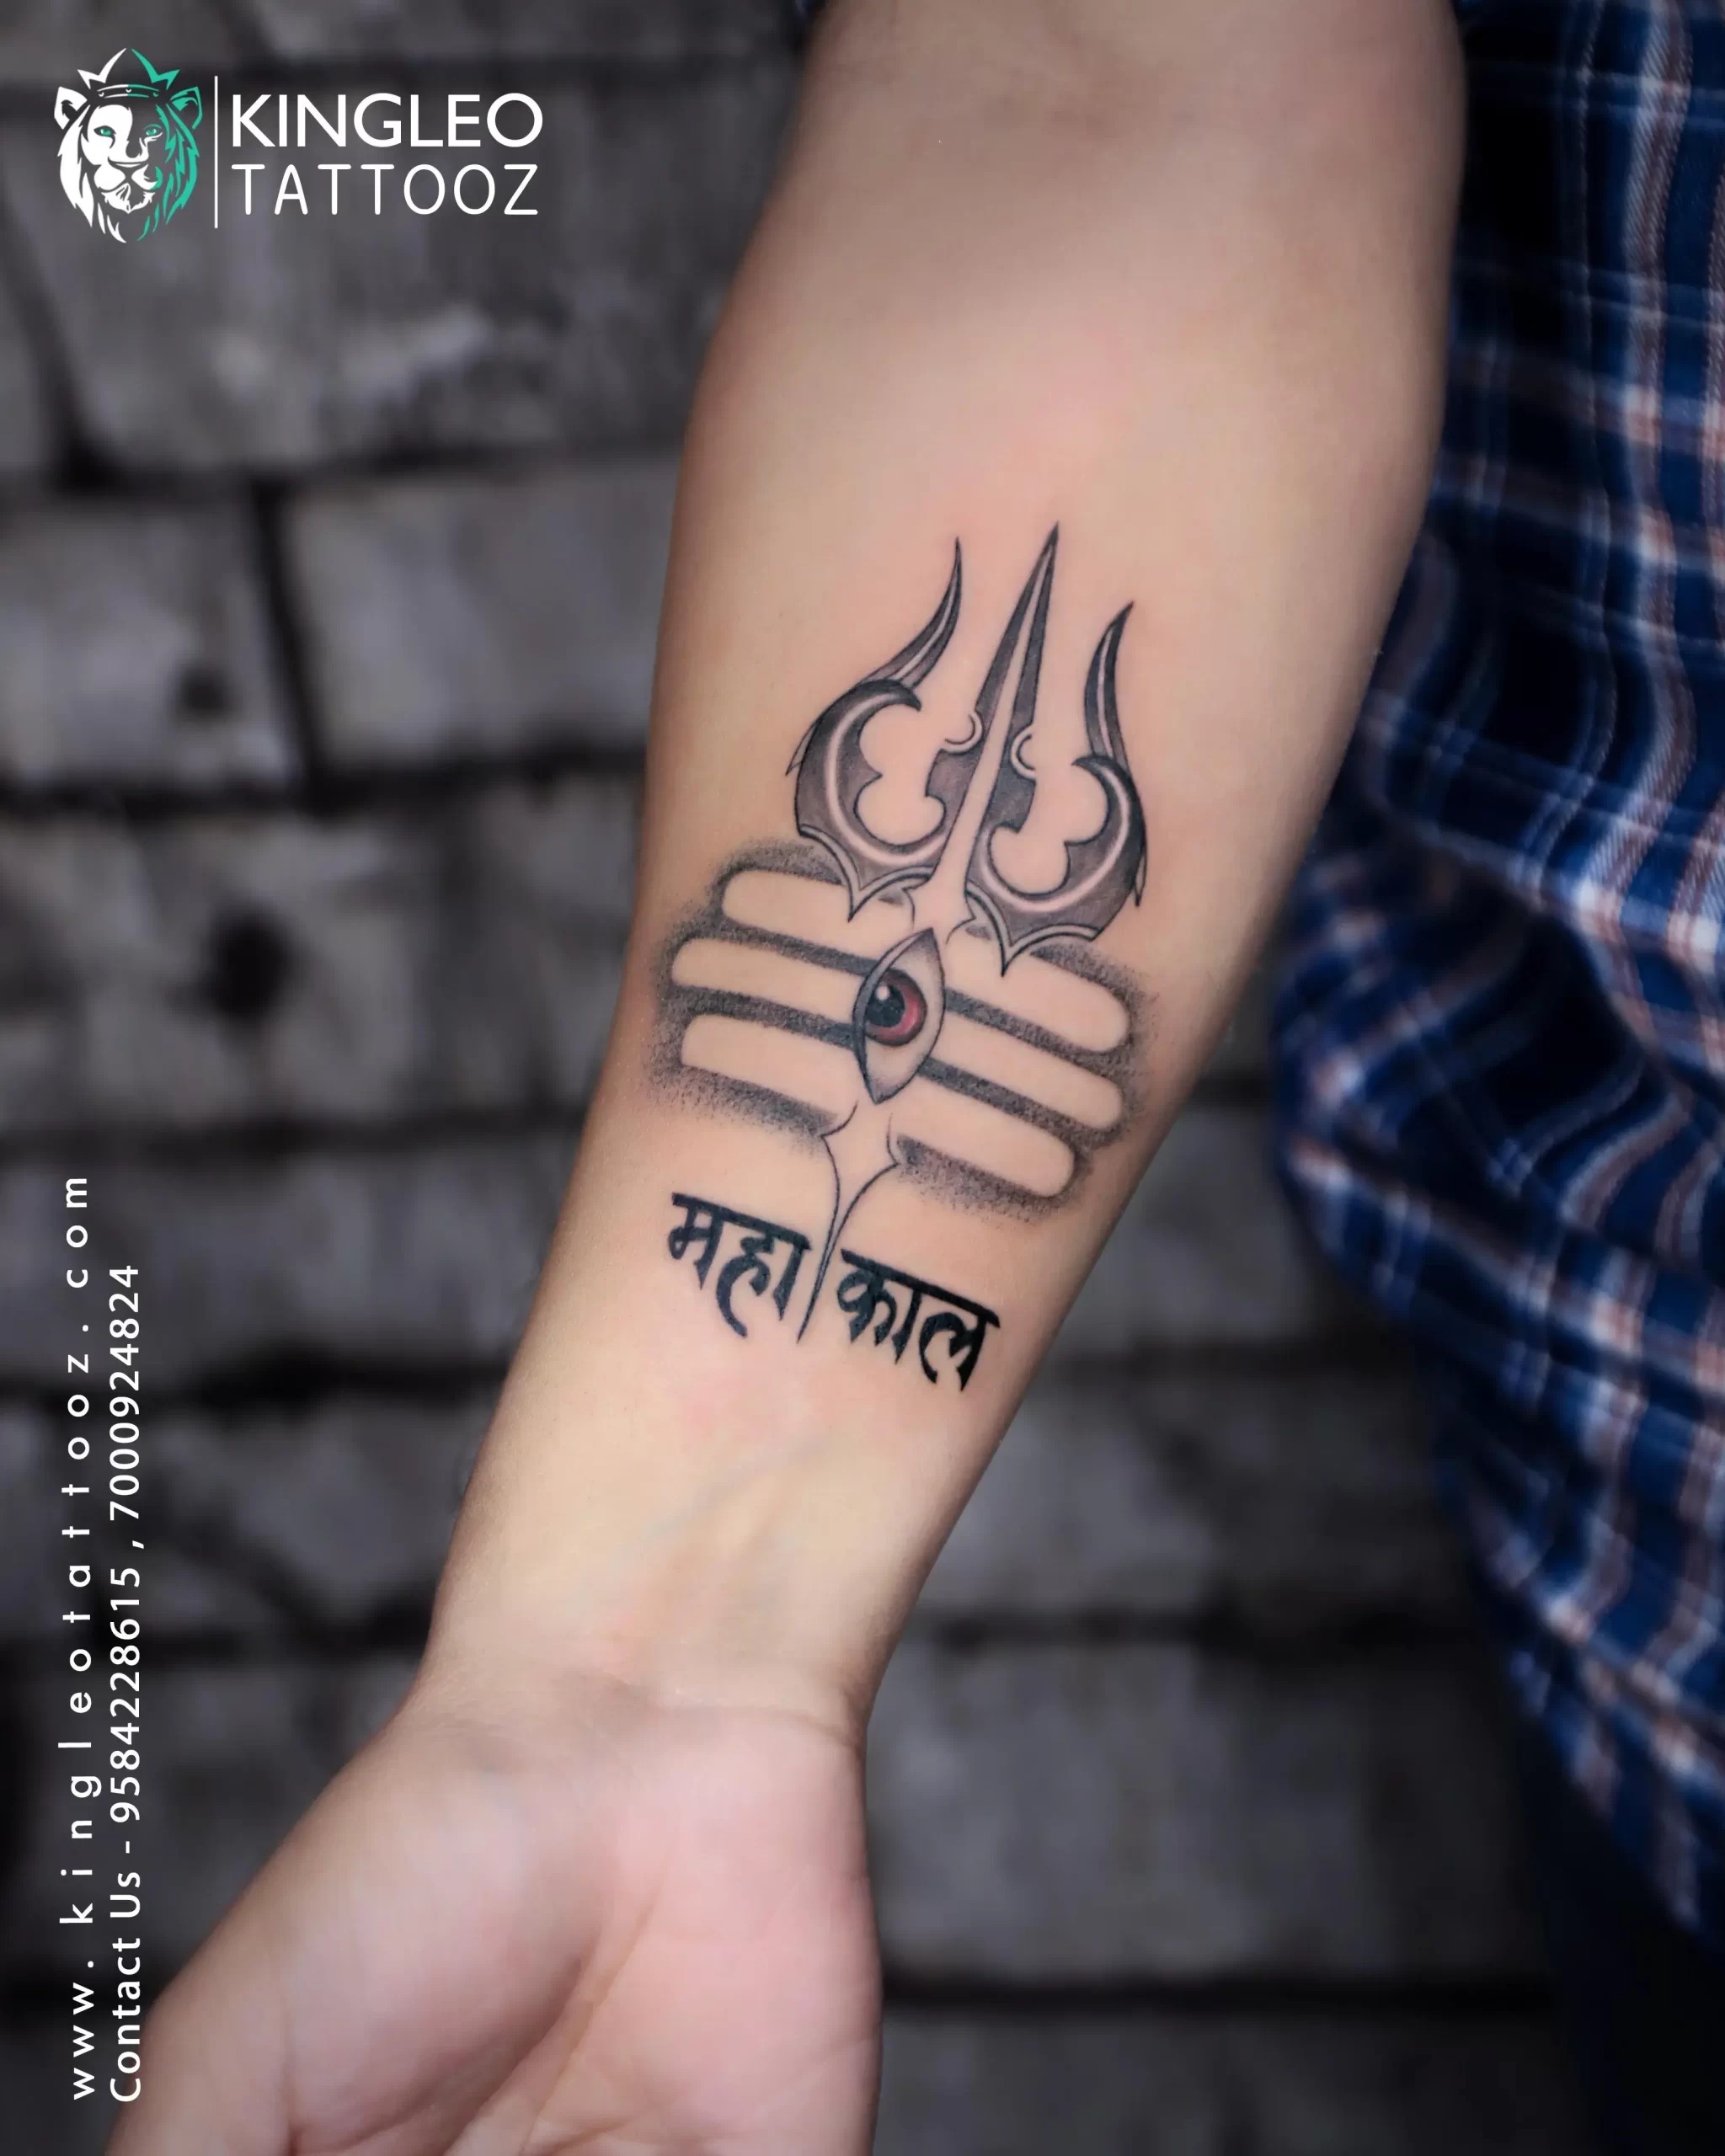 Voorkoms Shiva Tattoo Men Women Waterproof Temporary Body Tattoo :  Amazon.in: Beauty